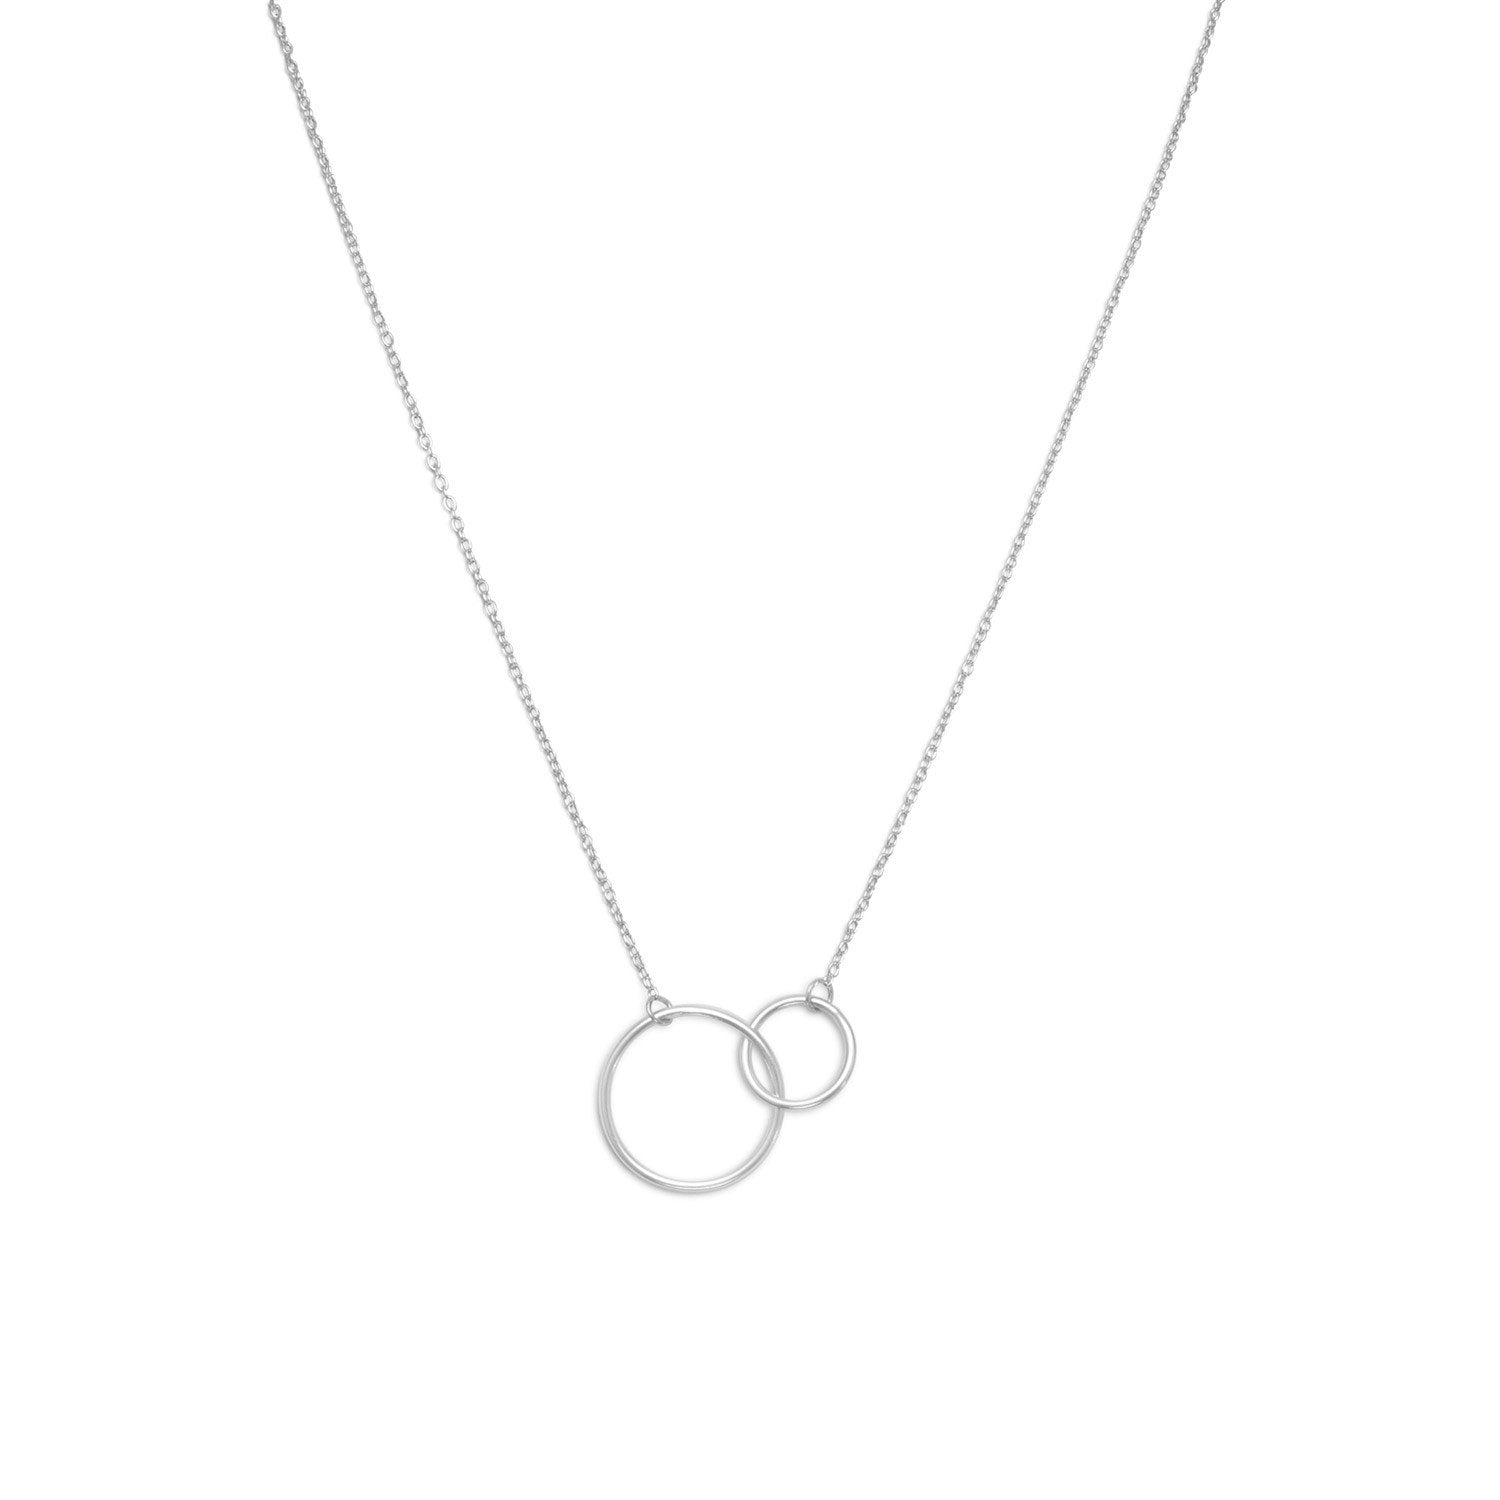 16" + 2" Rhodium Plated Circle Link Necklace - Joyeria Lady